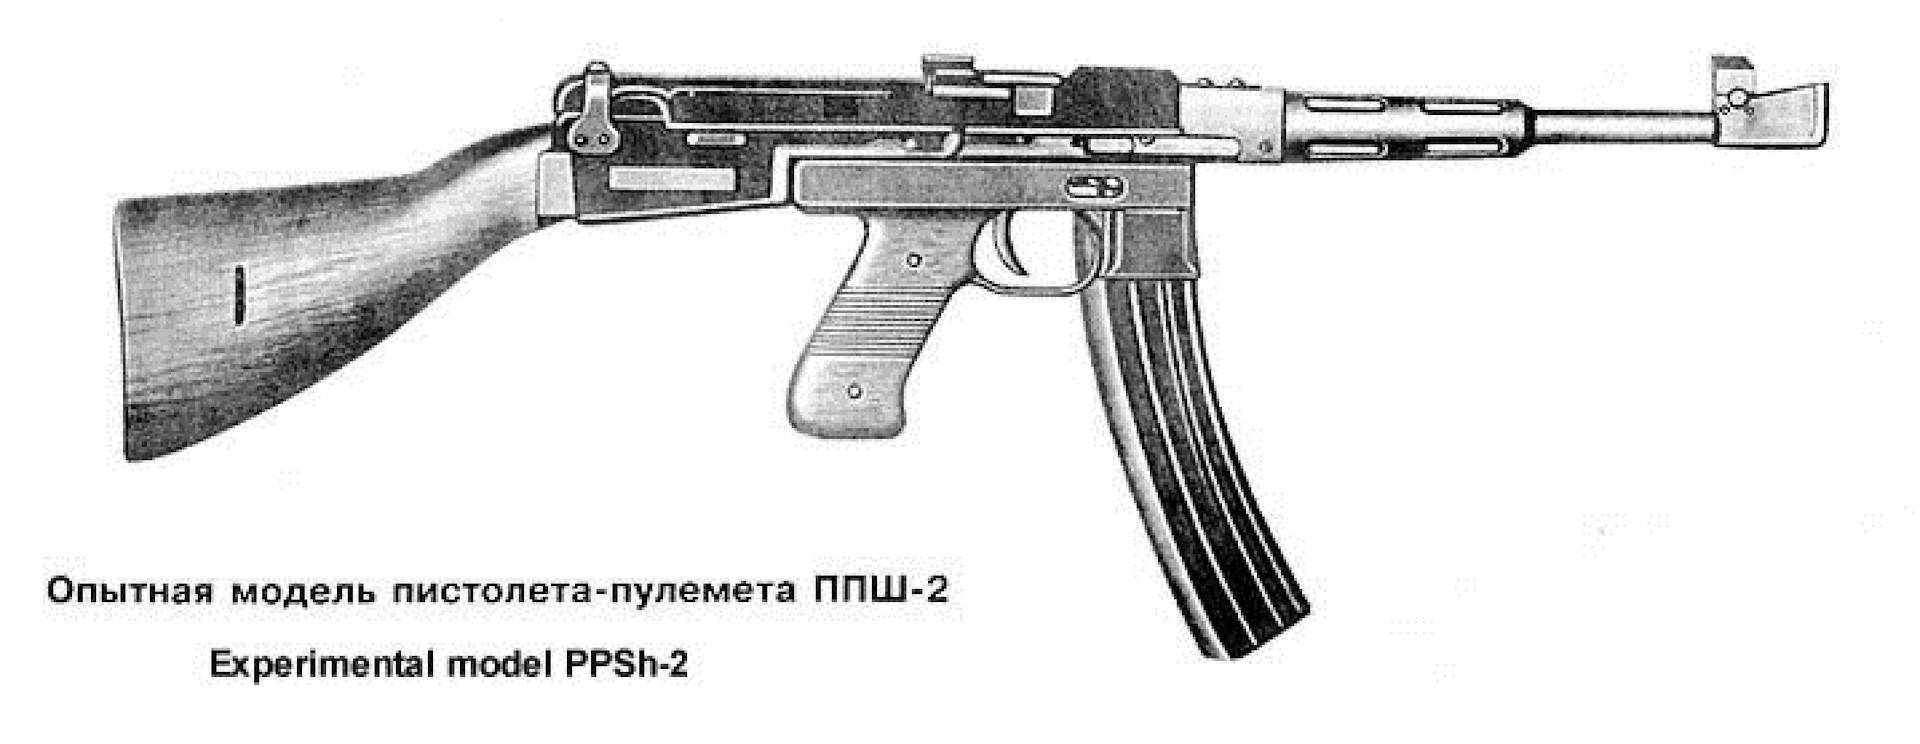 Пистолет-пулемет «скорпион» cz-61. характеристики, фото, описание